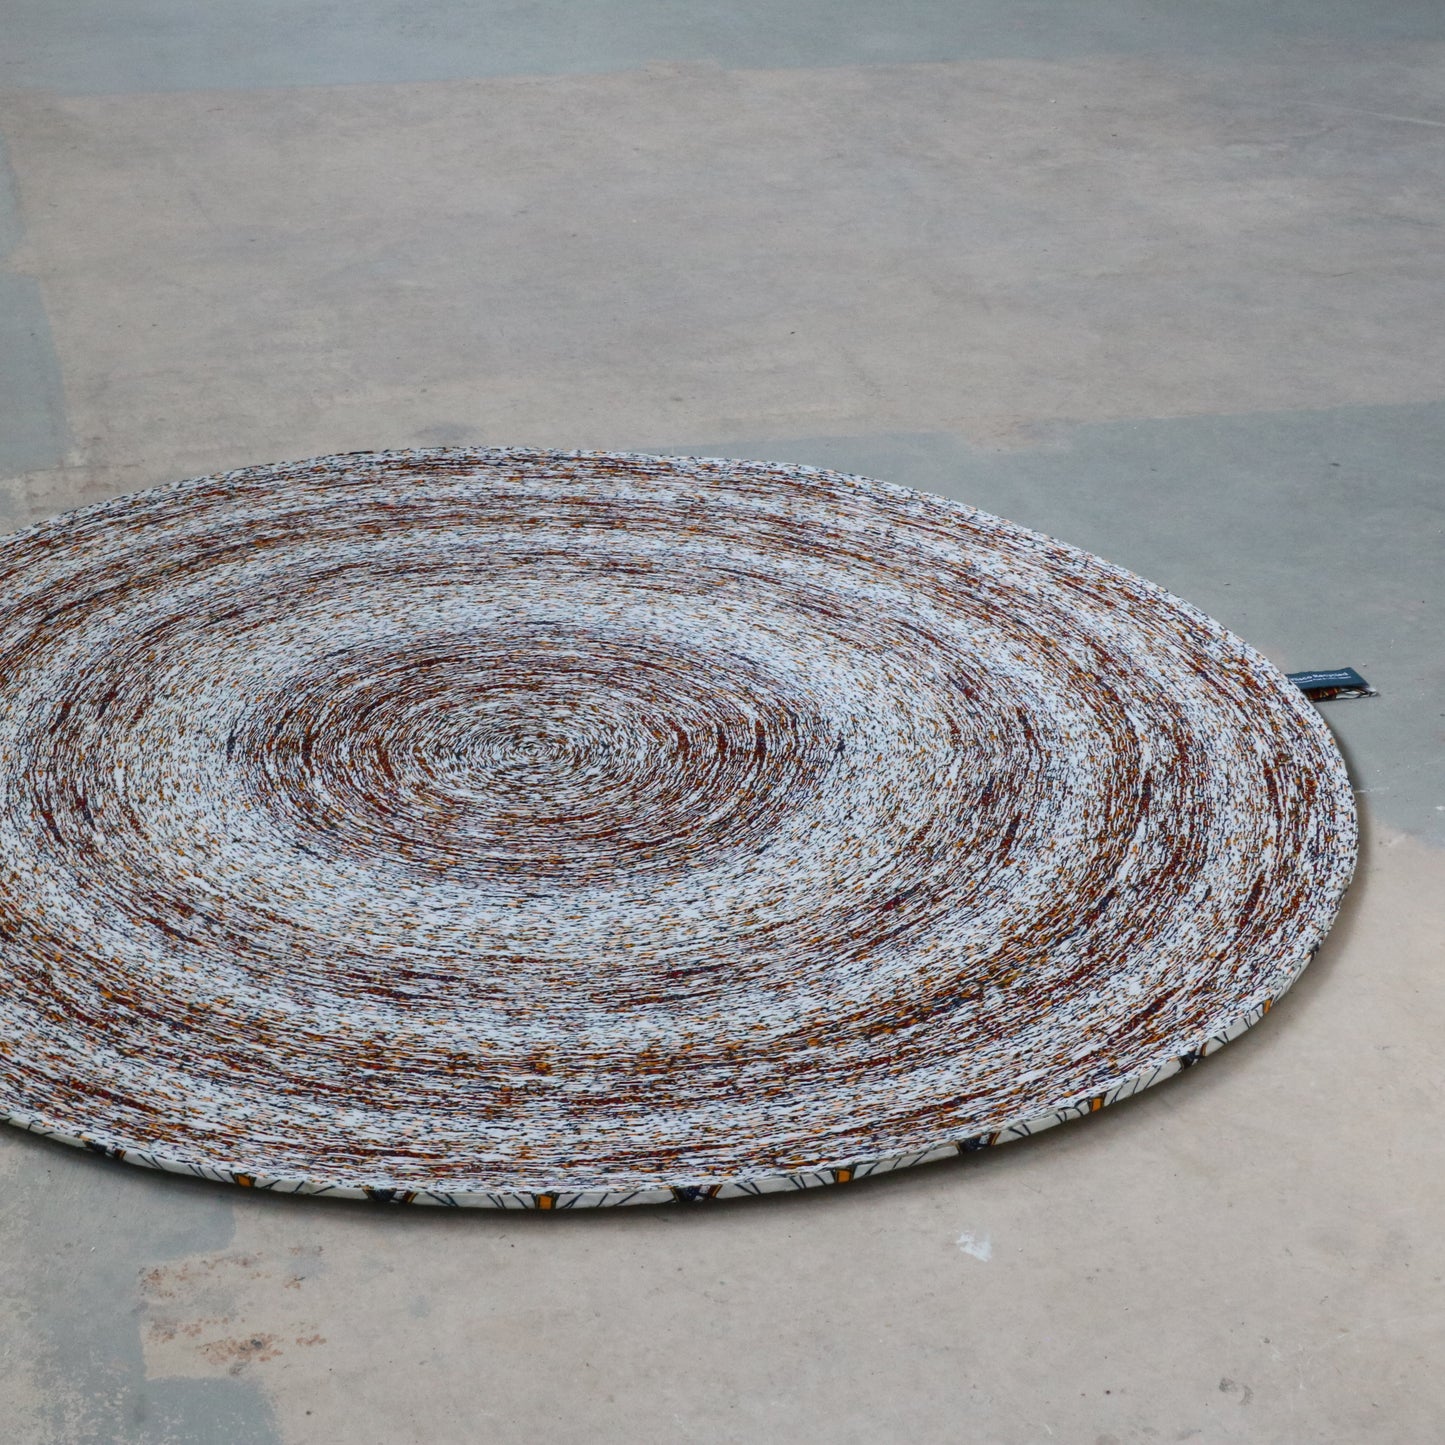 Netherlands, Simone Post, Vlisco Recycled Carpet White Light